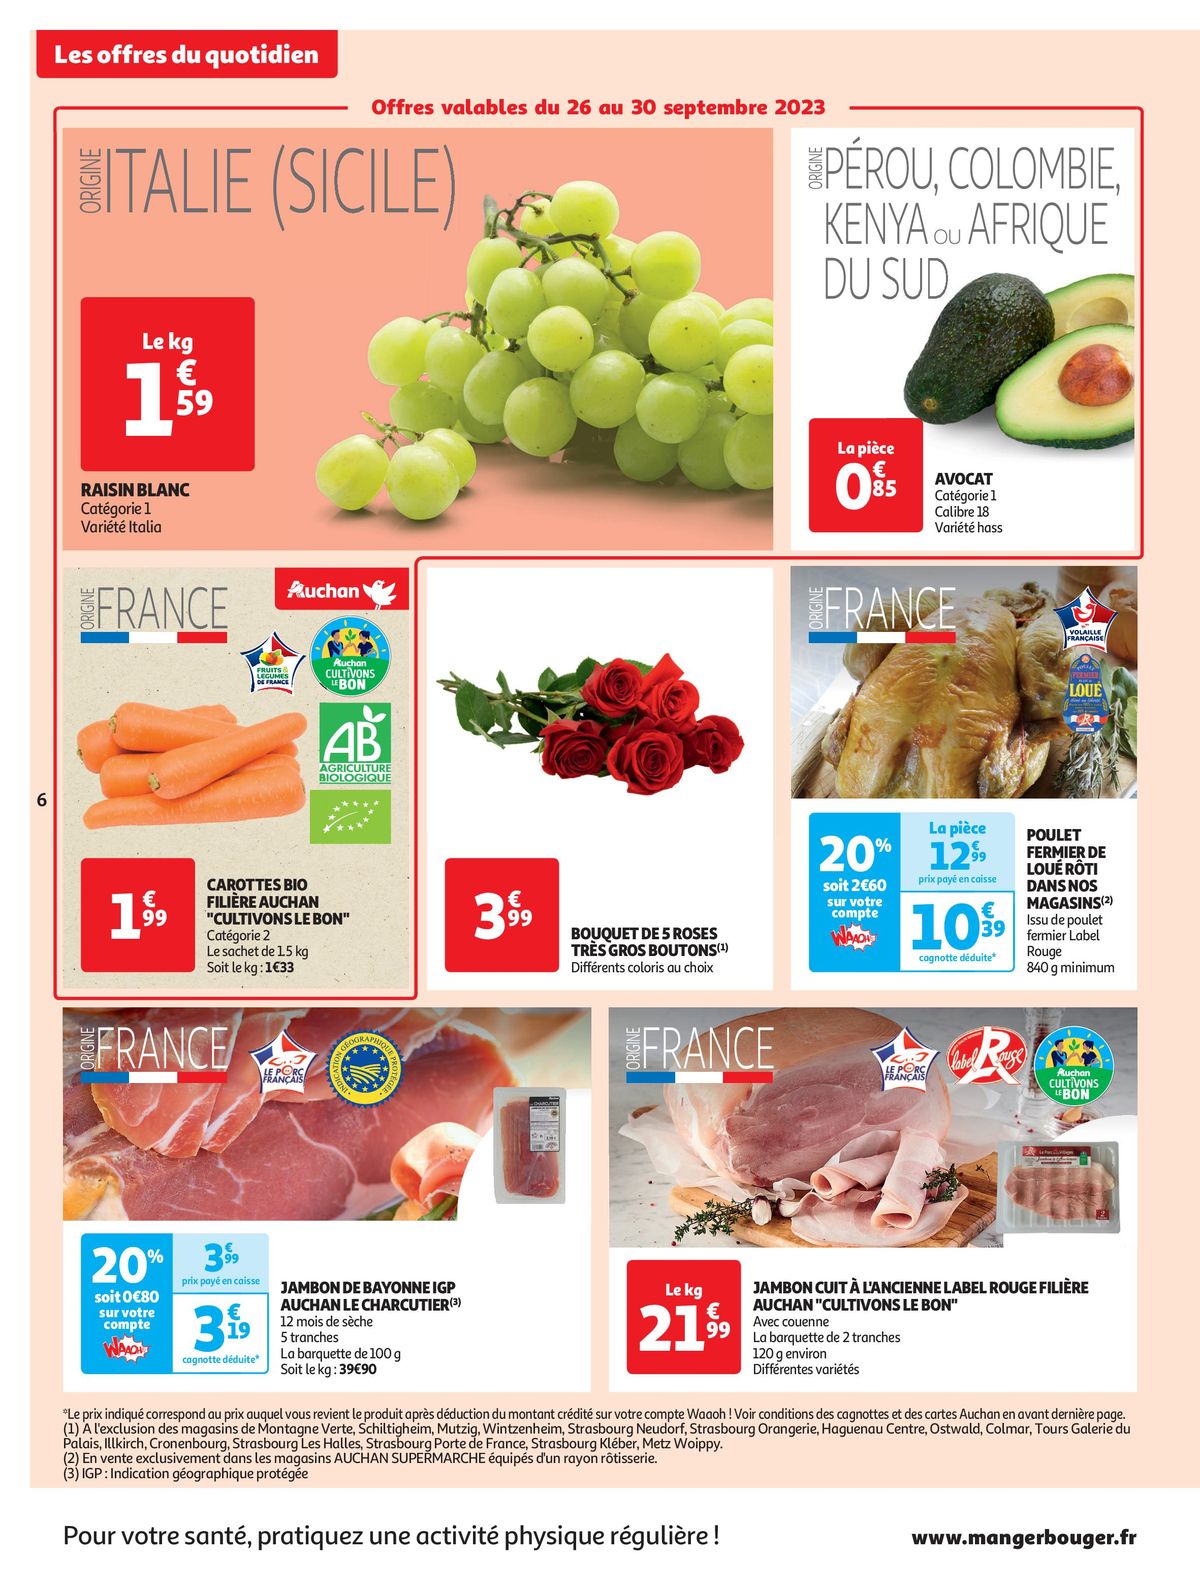 Catalogue Spécial Cuisine Gourmane dans votre supermarché, page 00006